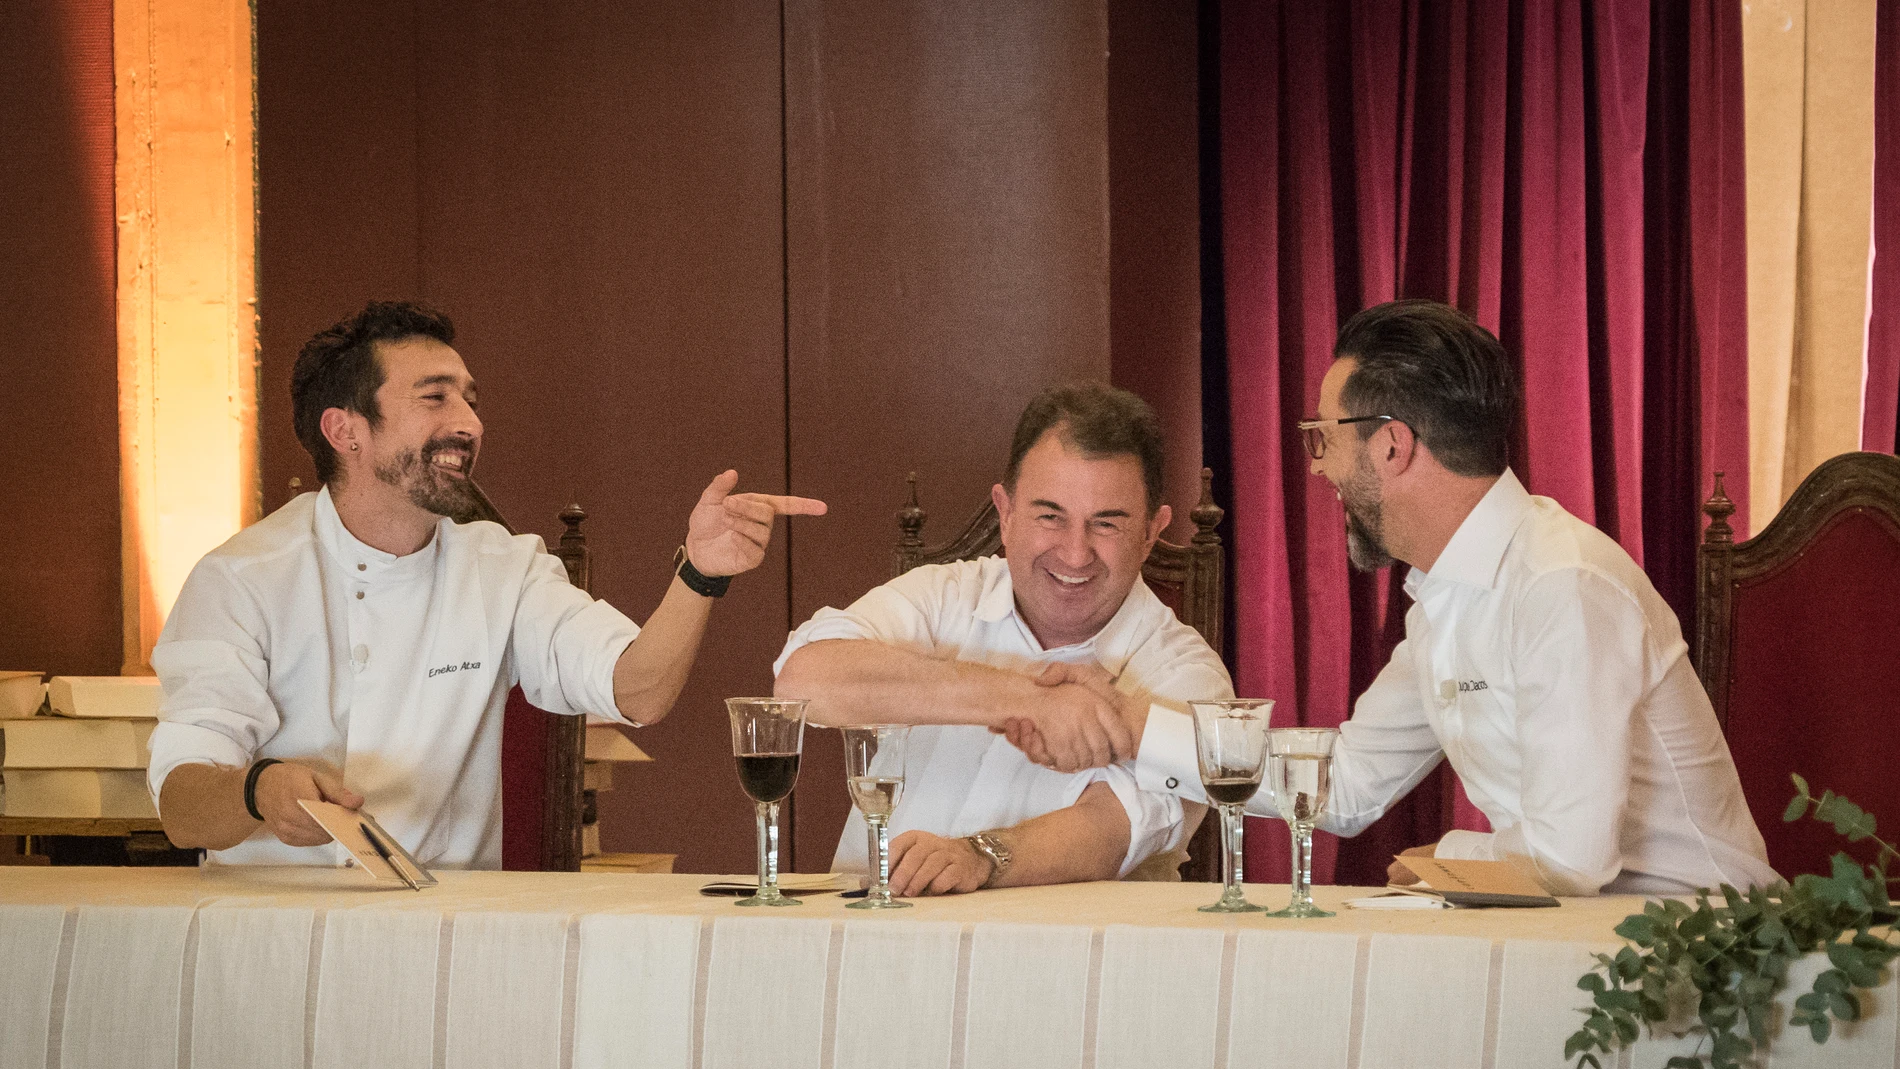 Quique Dacosta, Eneko Atxa y Martín Berasategui, jurado de infarto para una semifinal de ‘Top Chef’ sin precedentes